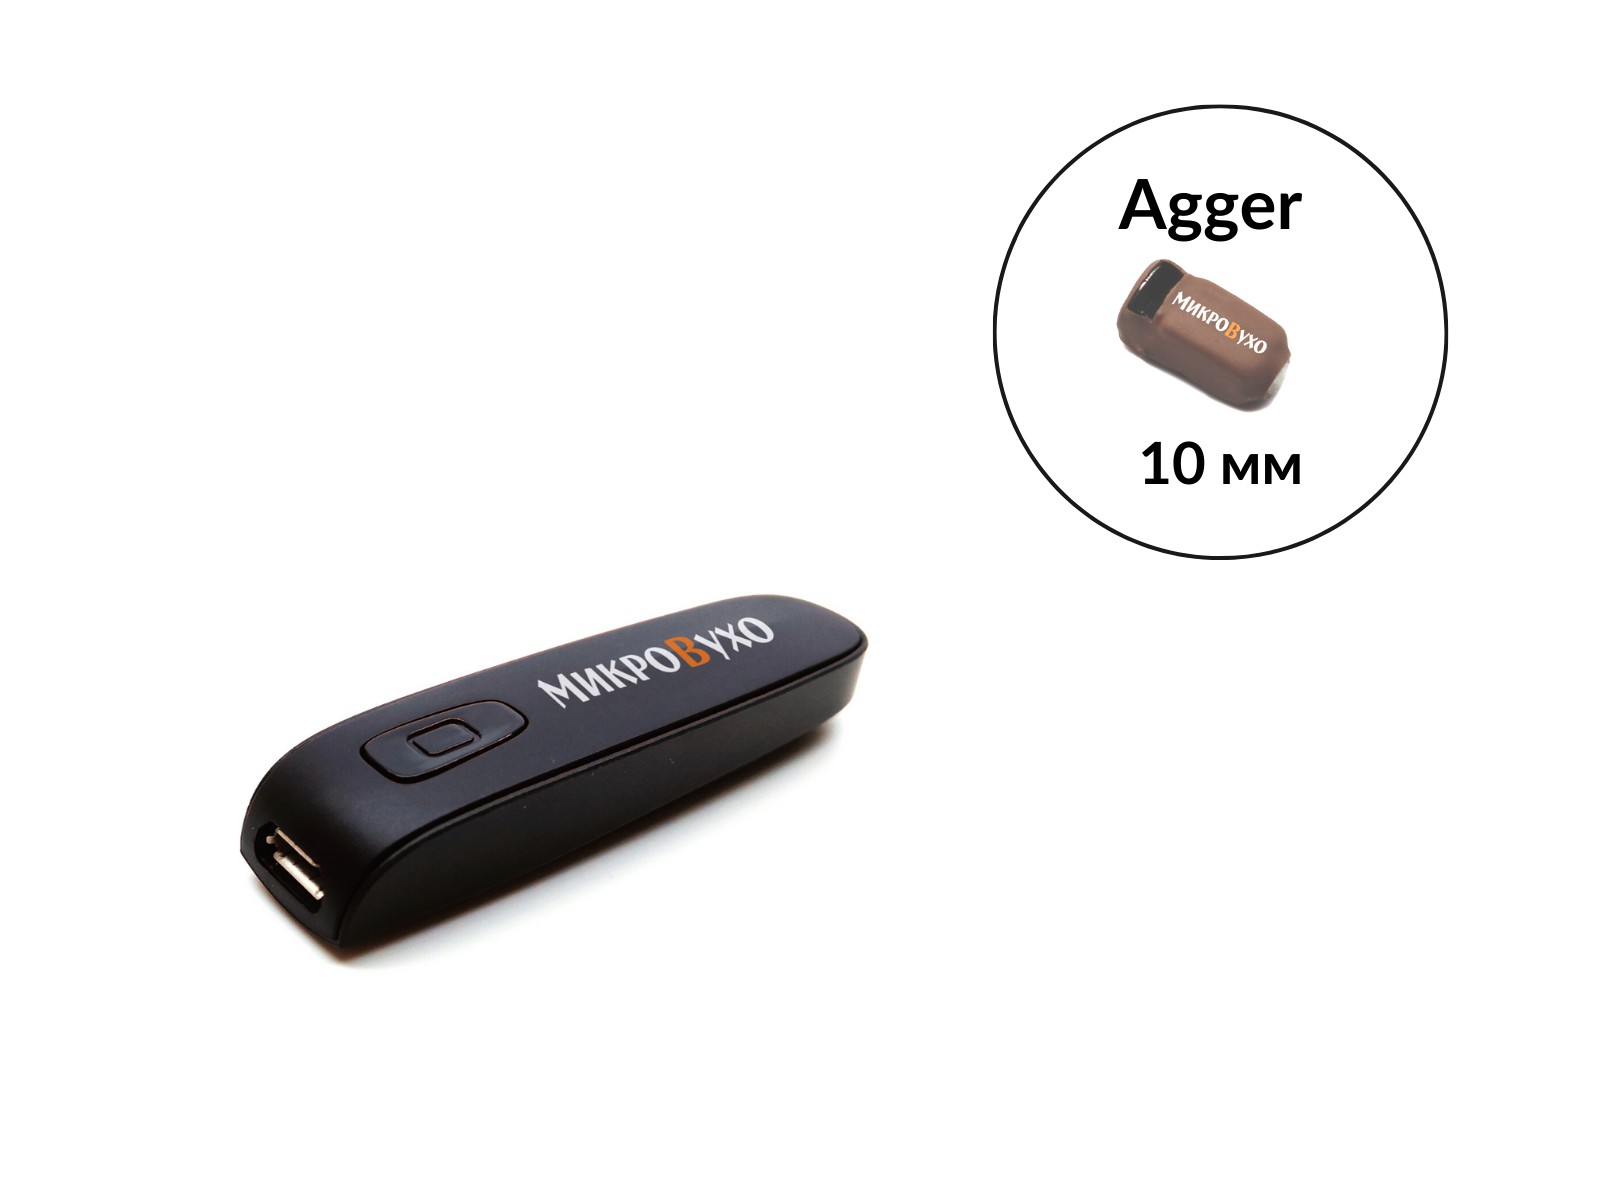 Гарнитура Bluetooth Box Basic с капсульным микронаушником Agger 10 мм 1